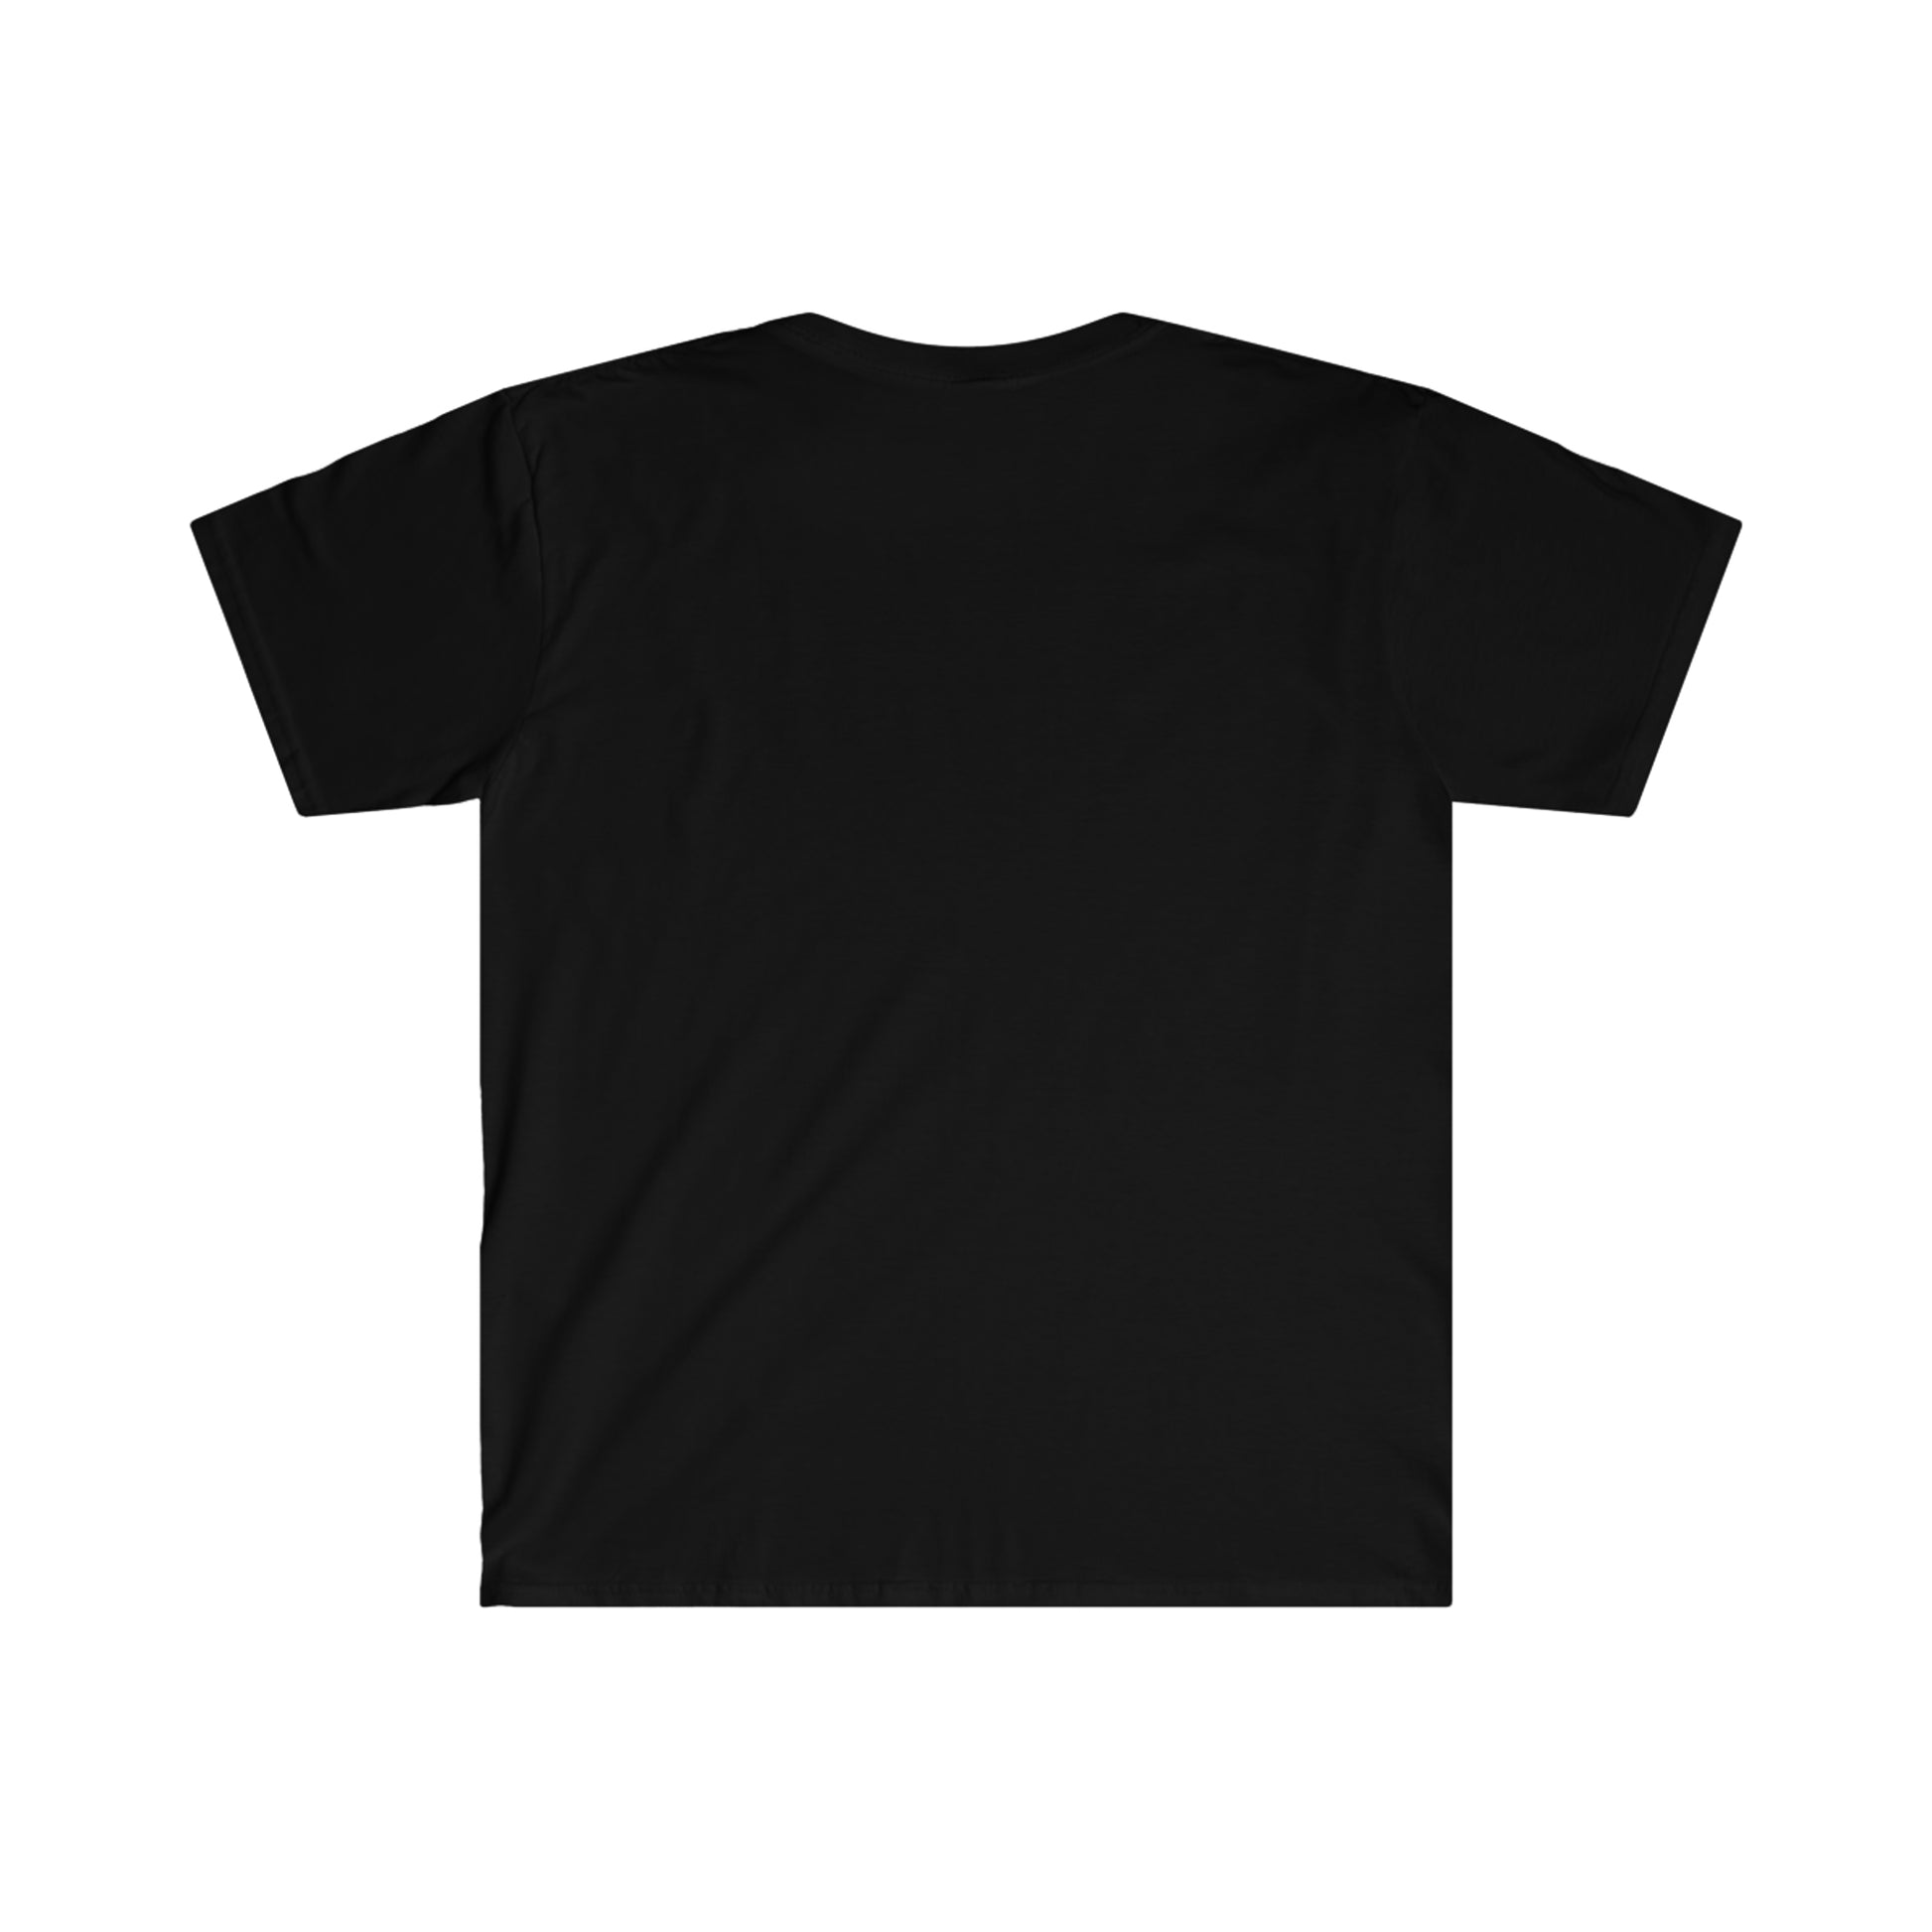 Gym Shirt, Men Shirt, Weightlifting Shirt, Workout Shirt, Retro Shirt, Summer T-Shirt, Gift For Him, - KathyRoseNaturals